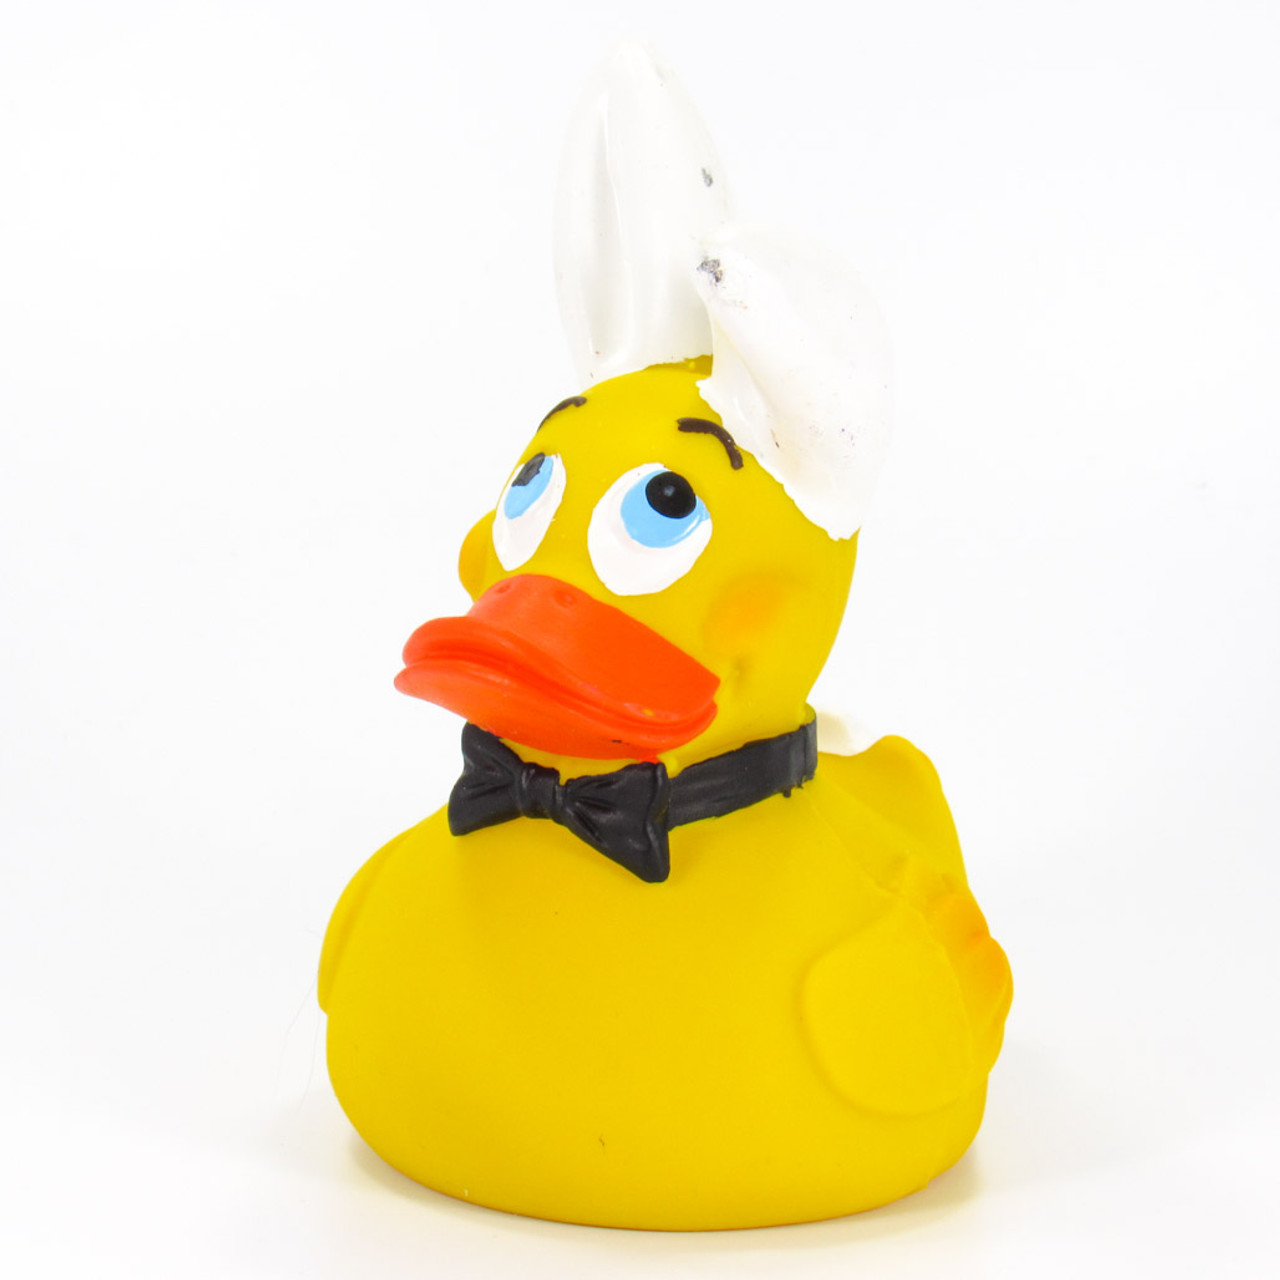 100 rubber ducks cheap